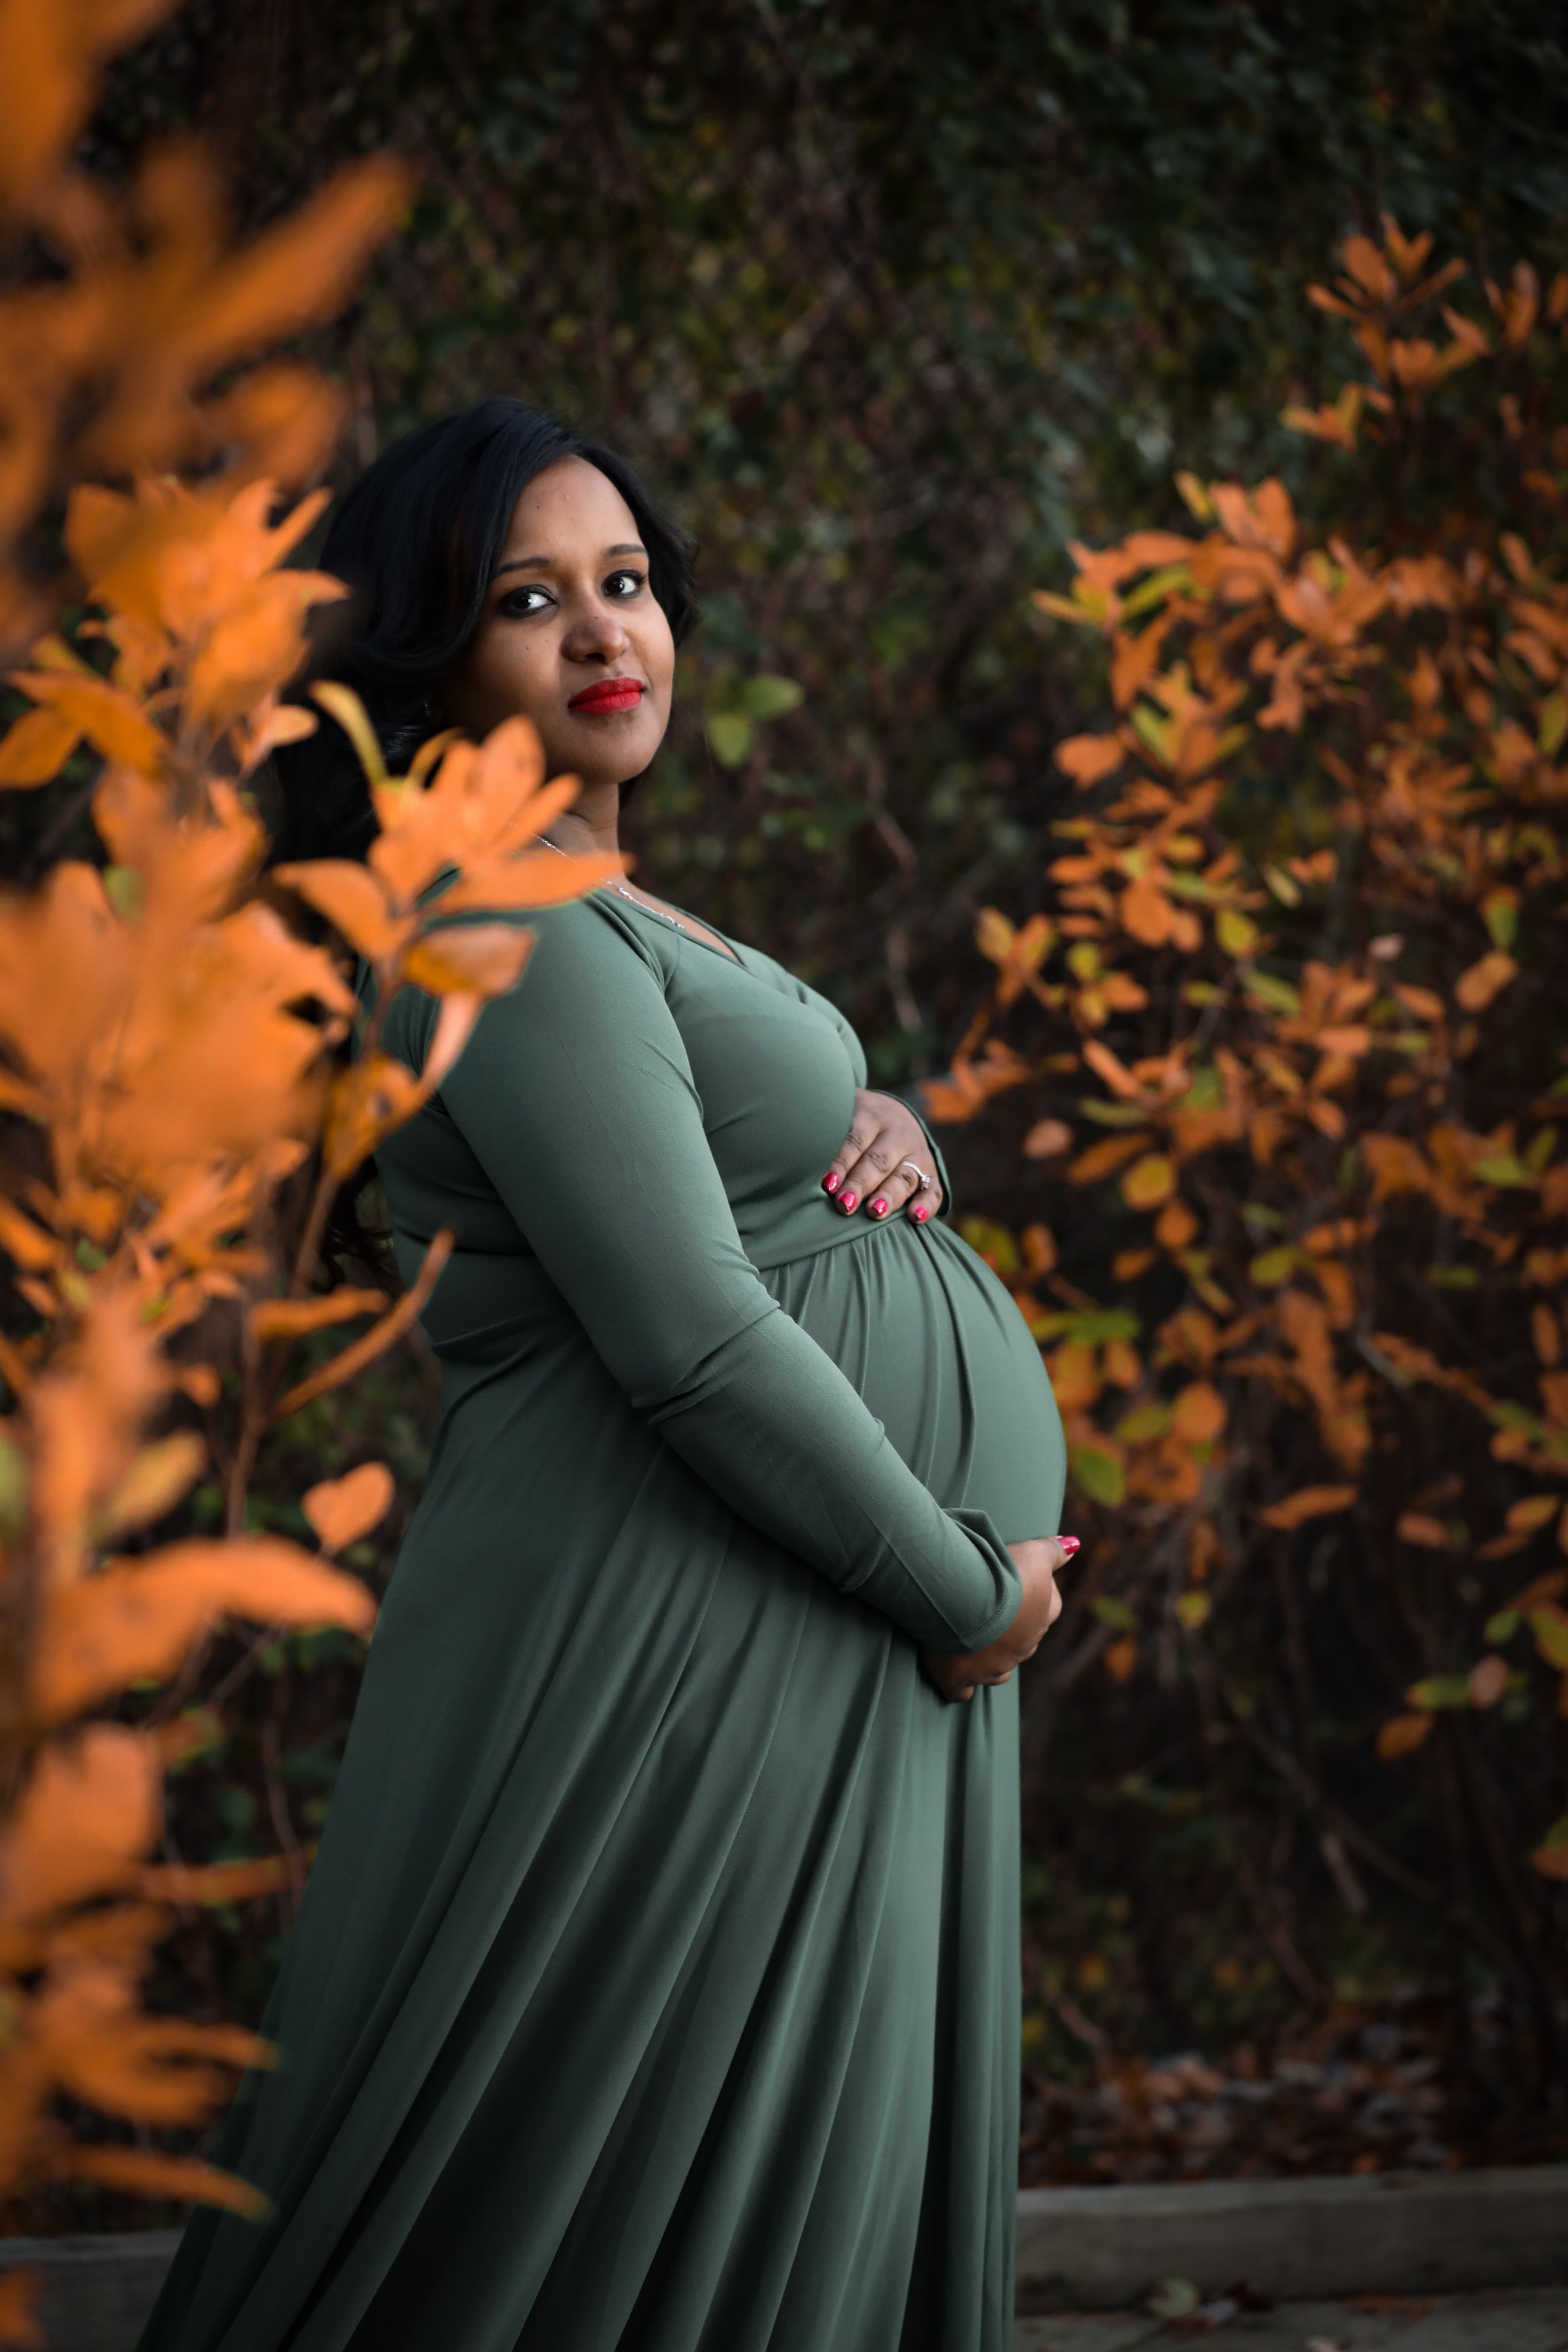 Fotografía de mujer embarazada. | Foto: Pexels